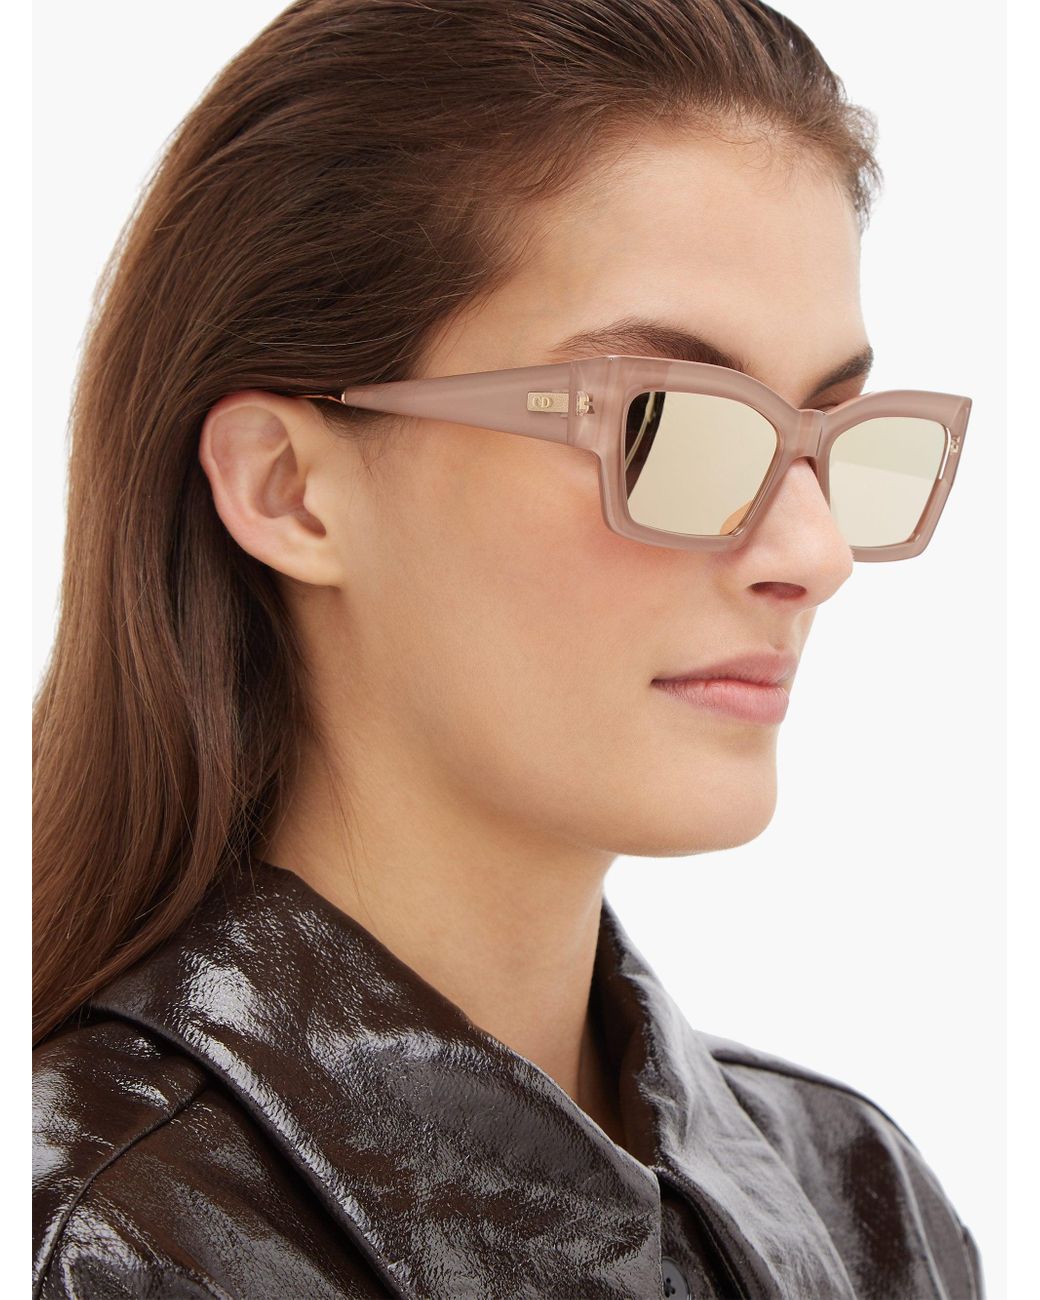 DiorHighlight S2I Translucent Gray and Light Gray Rectangular Sunglasses   DIOR